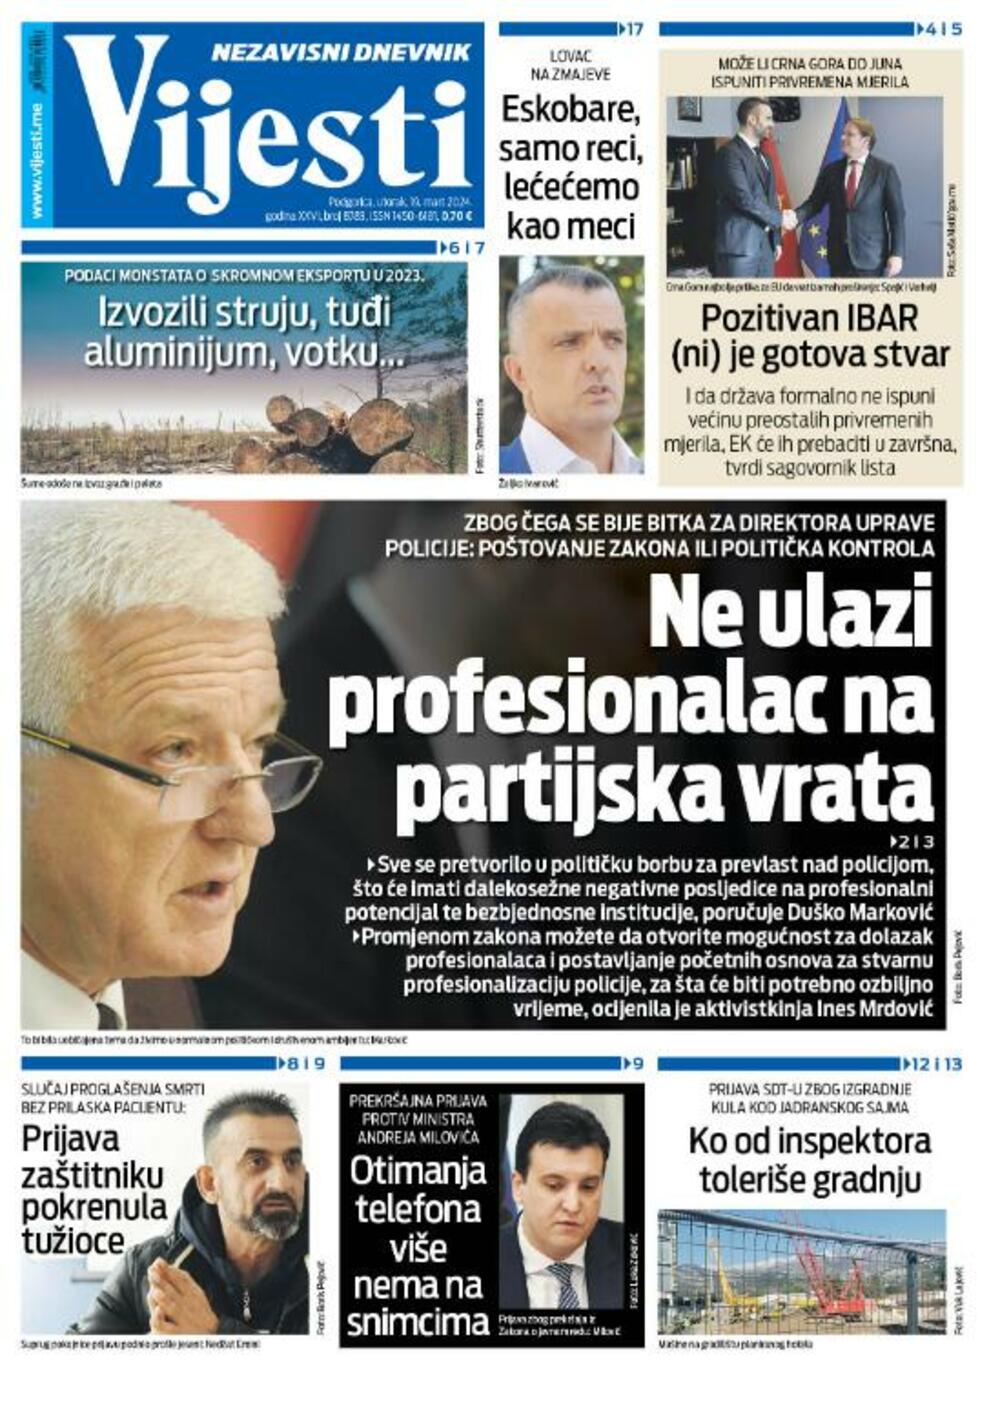 Naslovna strana "Vijesti" za 19. mart 2024., Foto: Vijesti